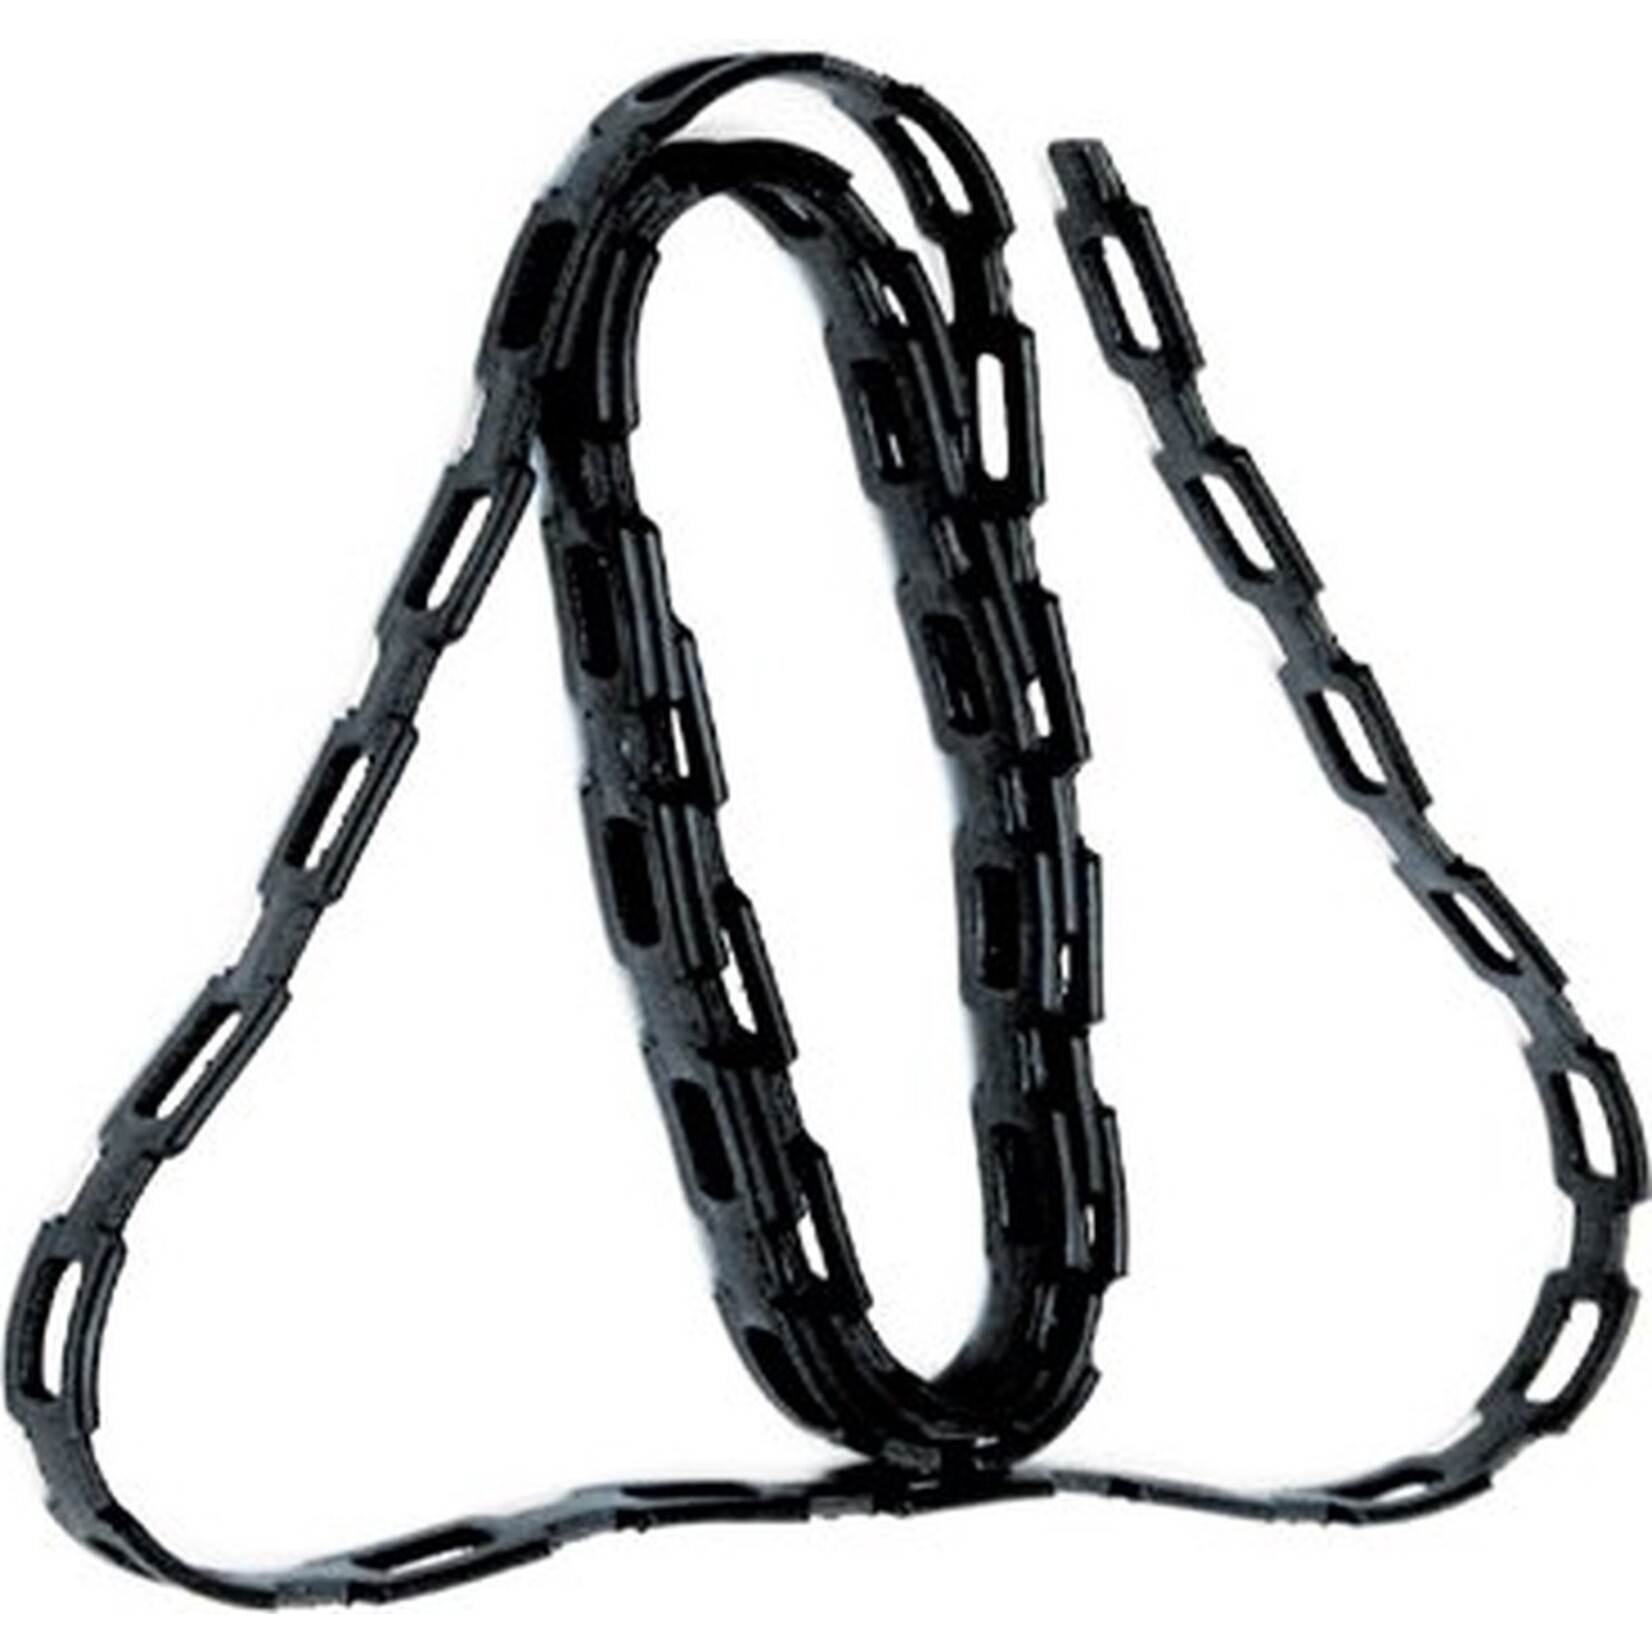 Hendrik Jan Kettingband zwart 125 cm (2x)